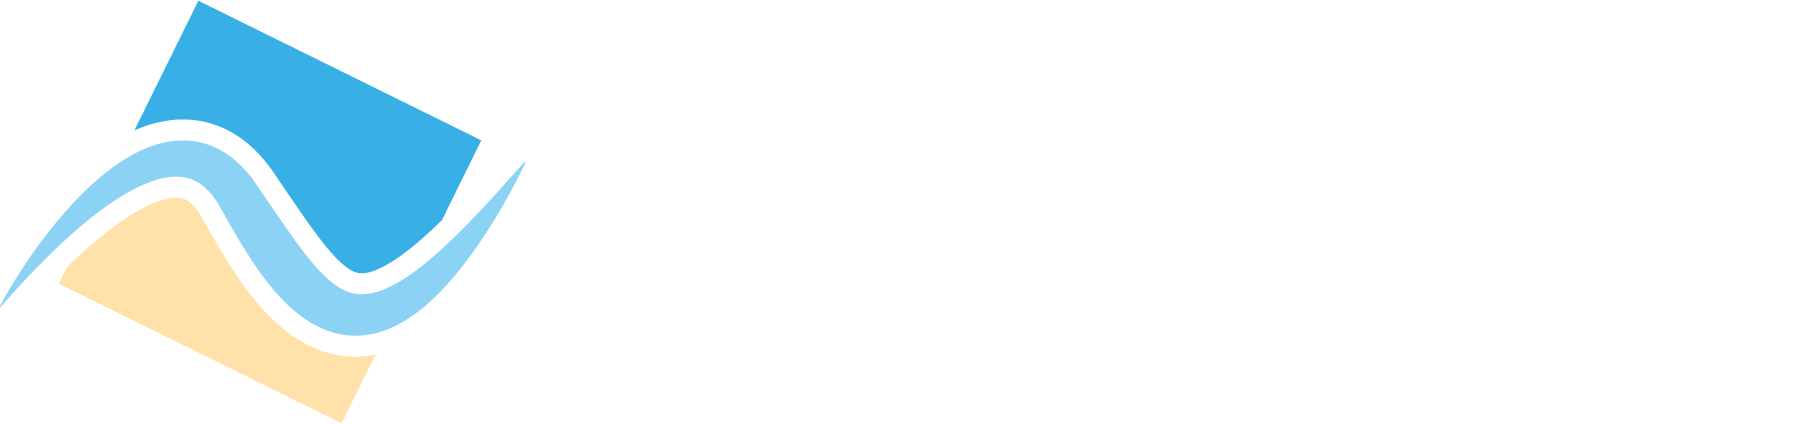 Art et piscines - Logo blanc